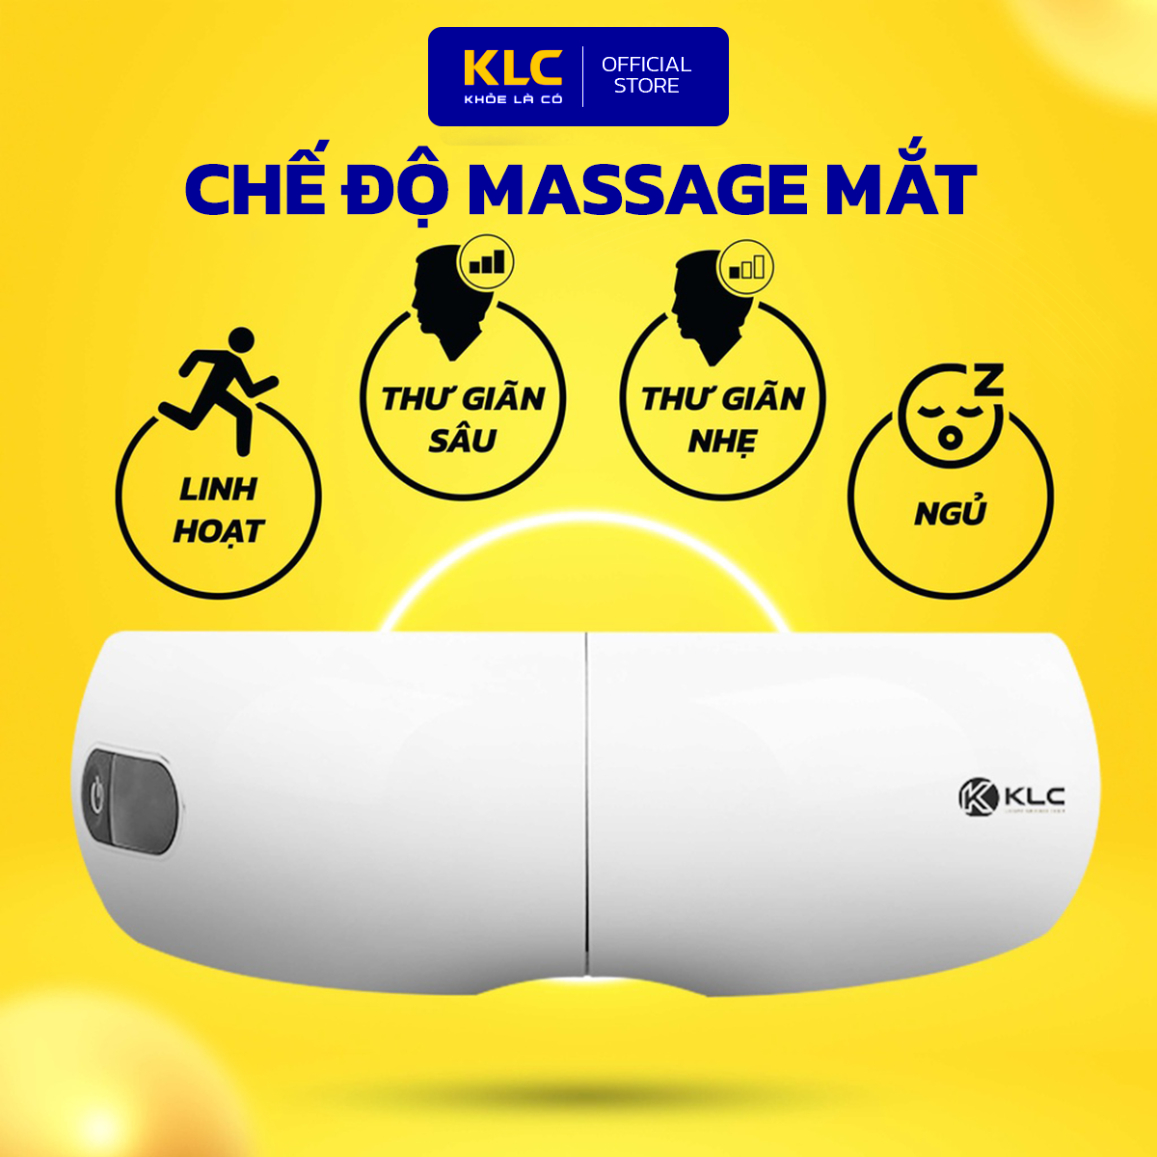 Máy Massage Mắt Cao Cấp KLC công nghệ nhiệt hồng ngoại, phát nhạc MP3, giúp dễ ngủ giảm stress